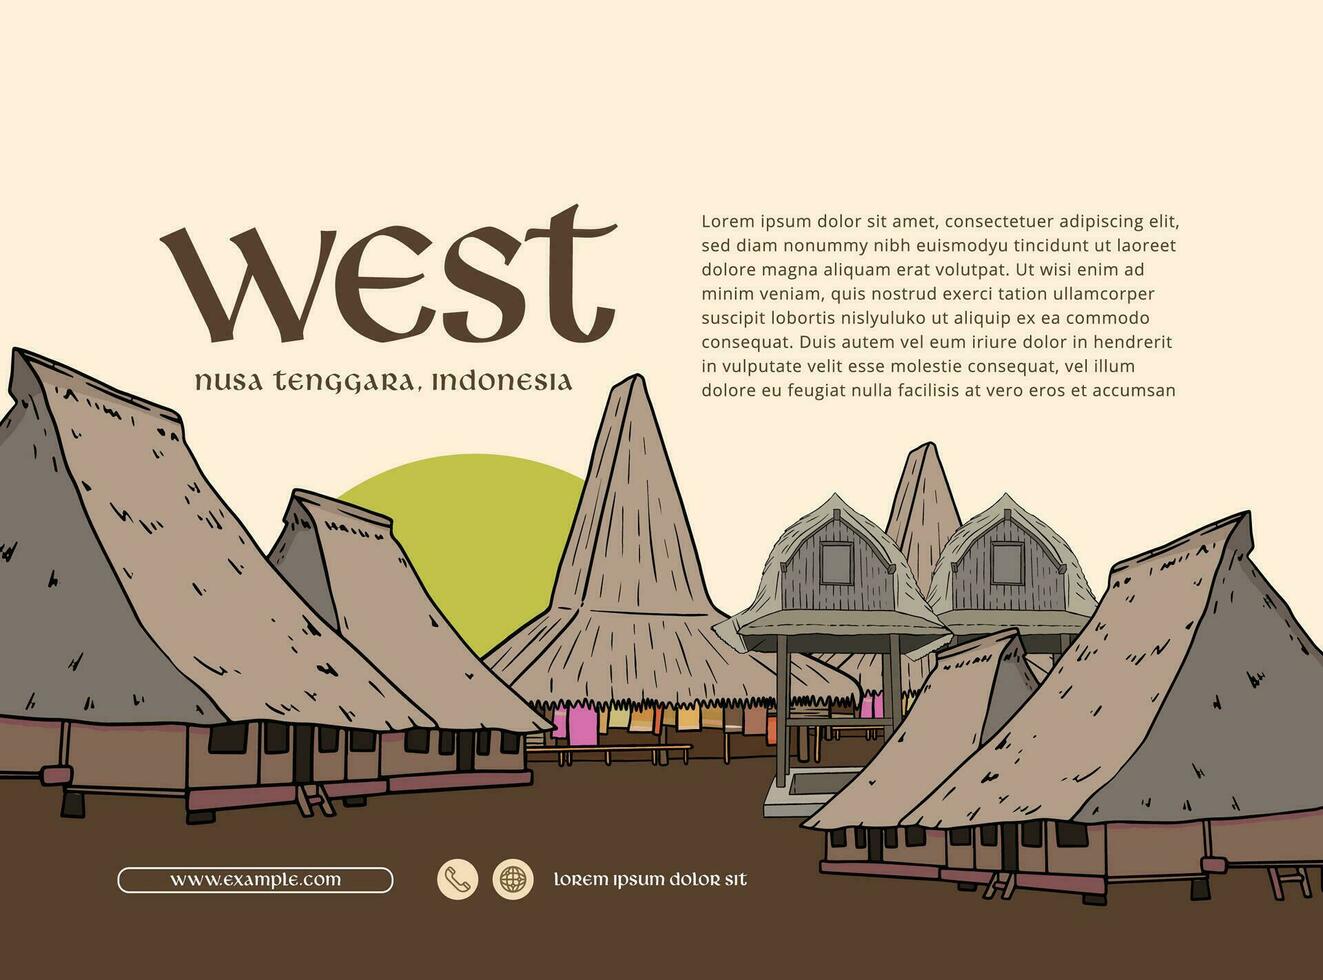 ovest nusa tenggara Indonesia cultura illustrazione design idea vettore